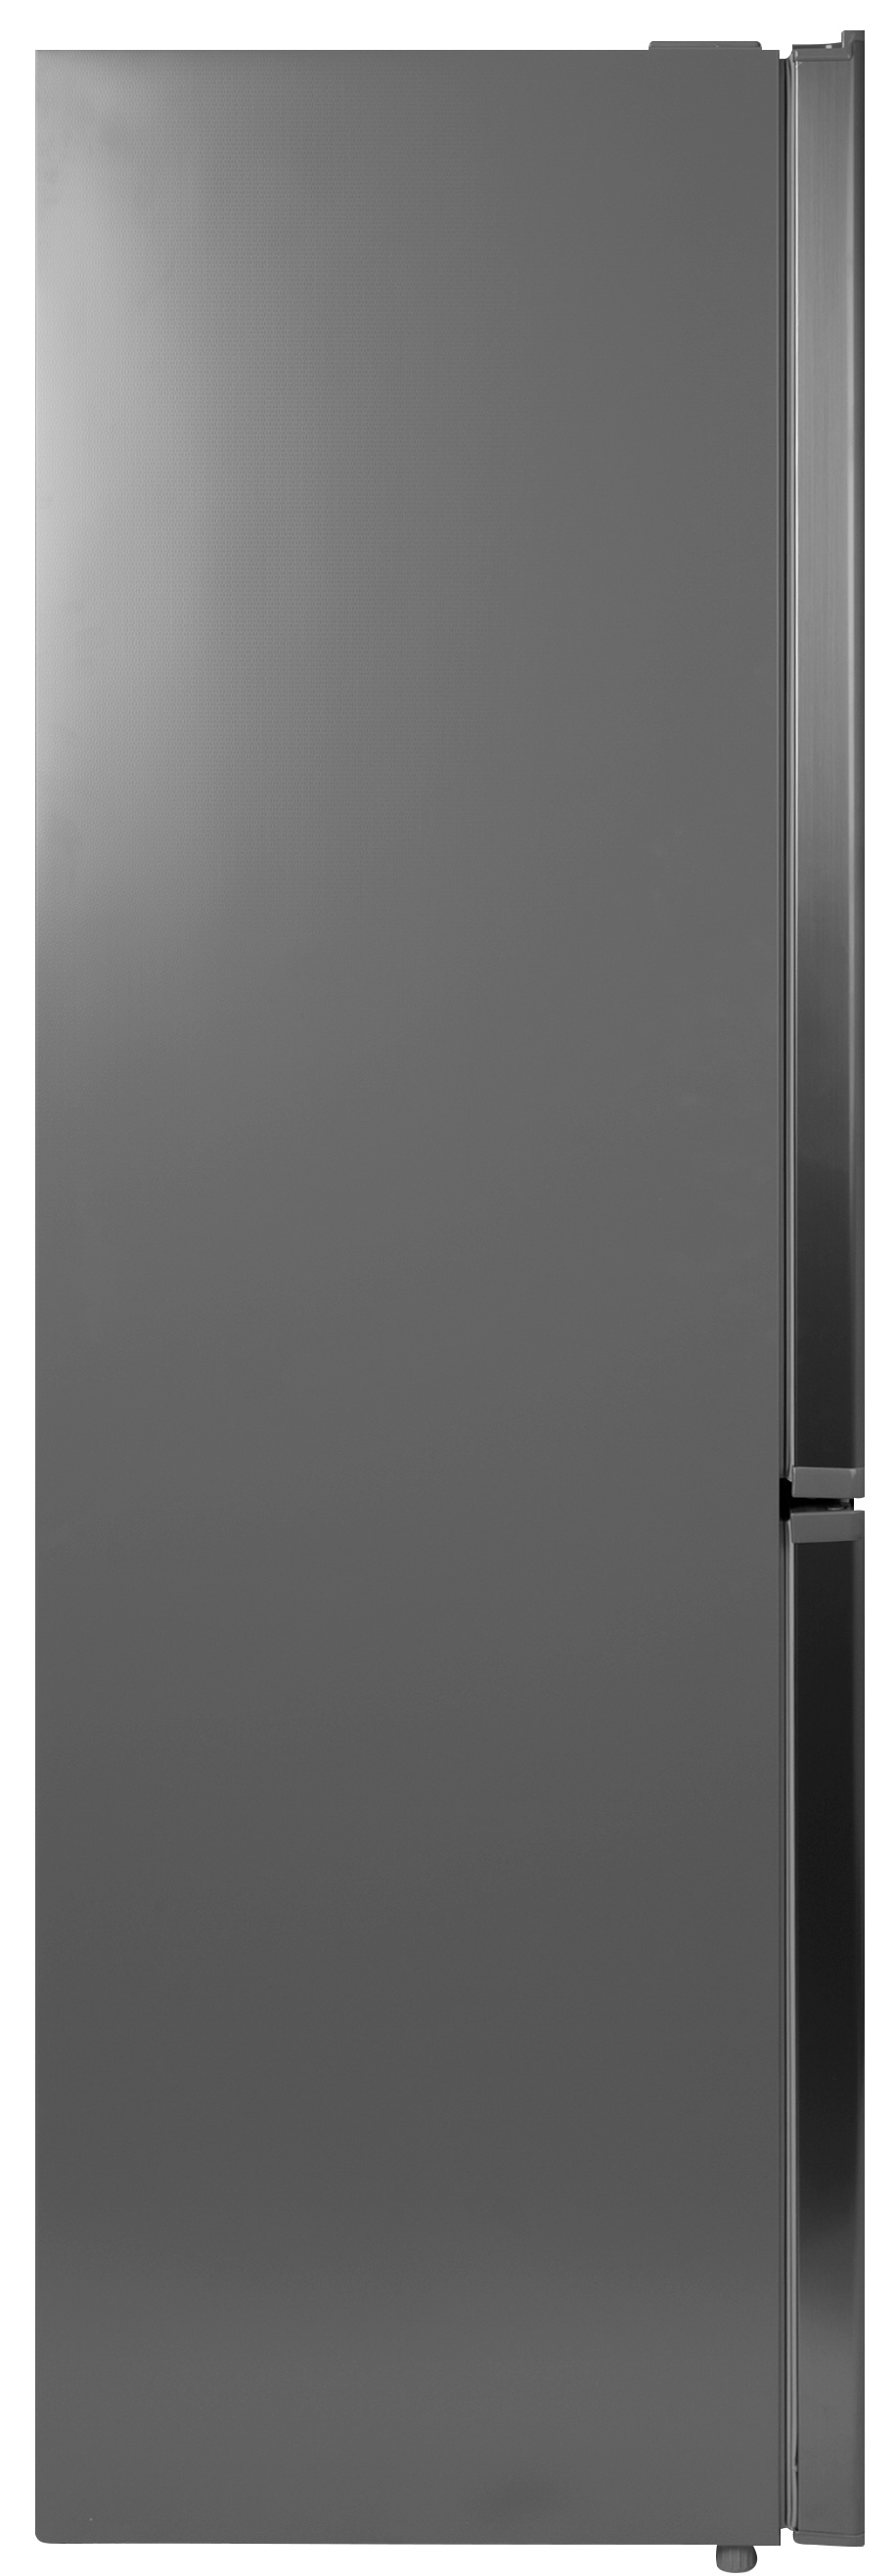 Холодильник Grifon DFN-180X отзывы - изображения 5